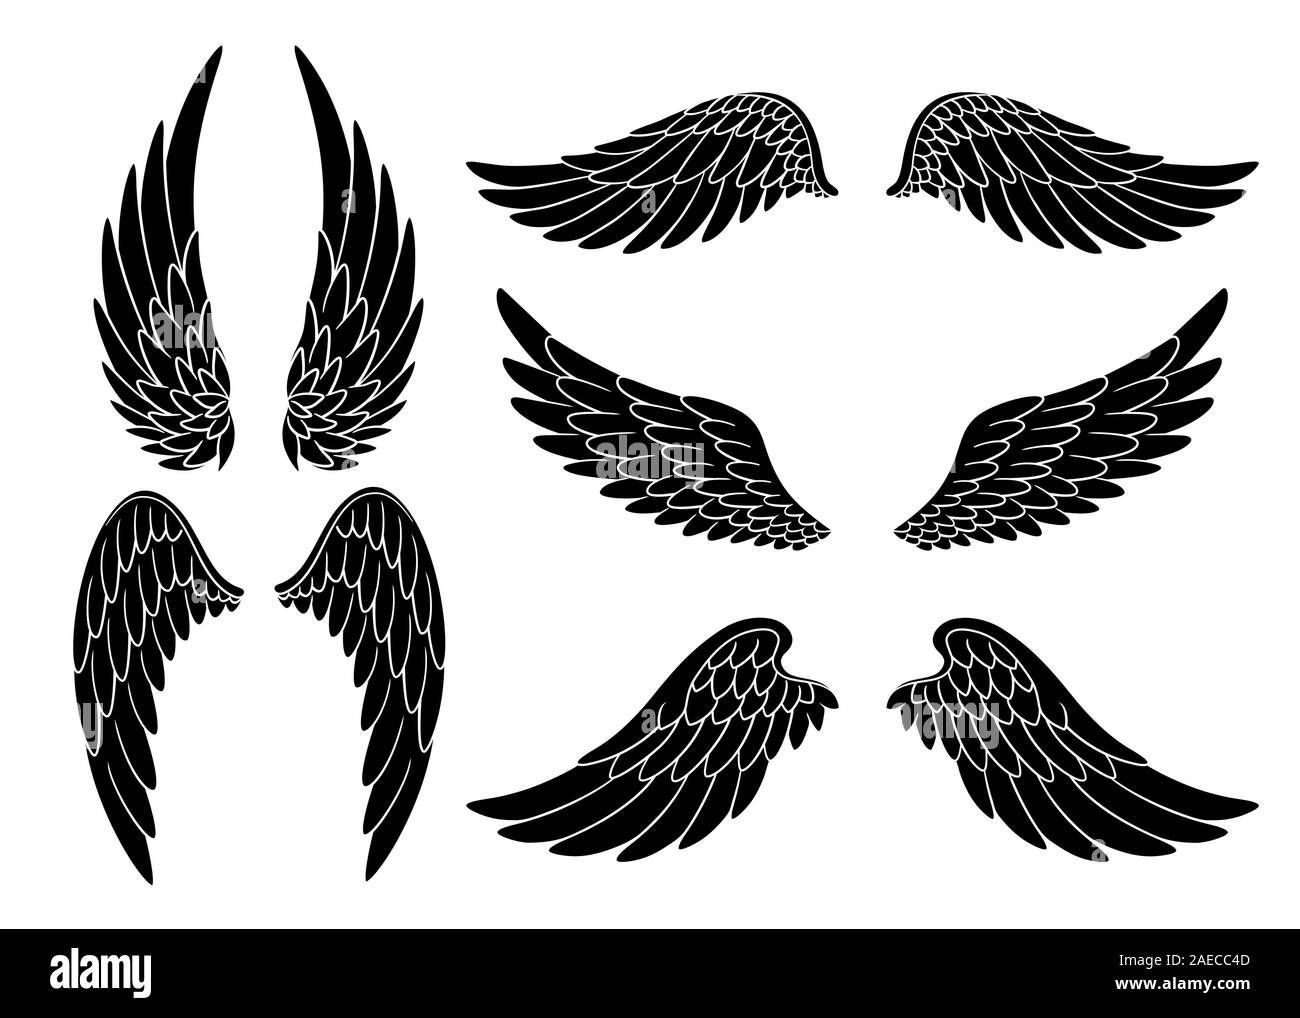 Ensemble d'ailes d'oiseau ou d'ange dessinées à la main de forme différente en position ouverte. Ensemble d'ailes d'ailes d'ailes d'ailes d'ailes d'ailes d'ailes Illustration de Vecteur